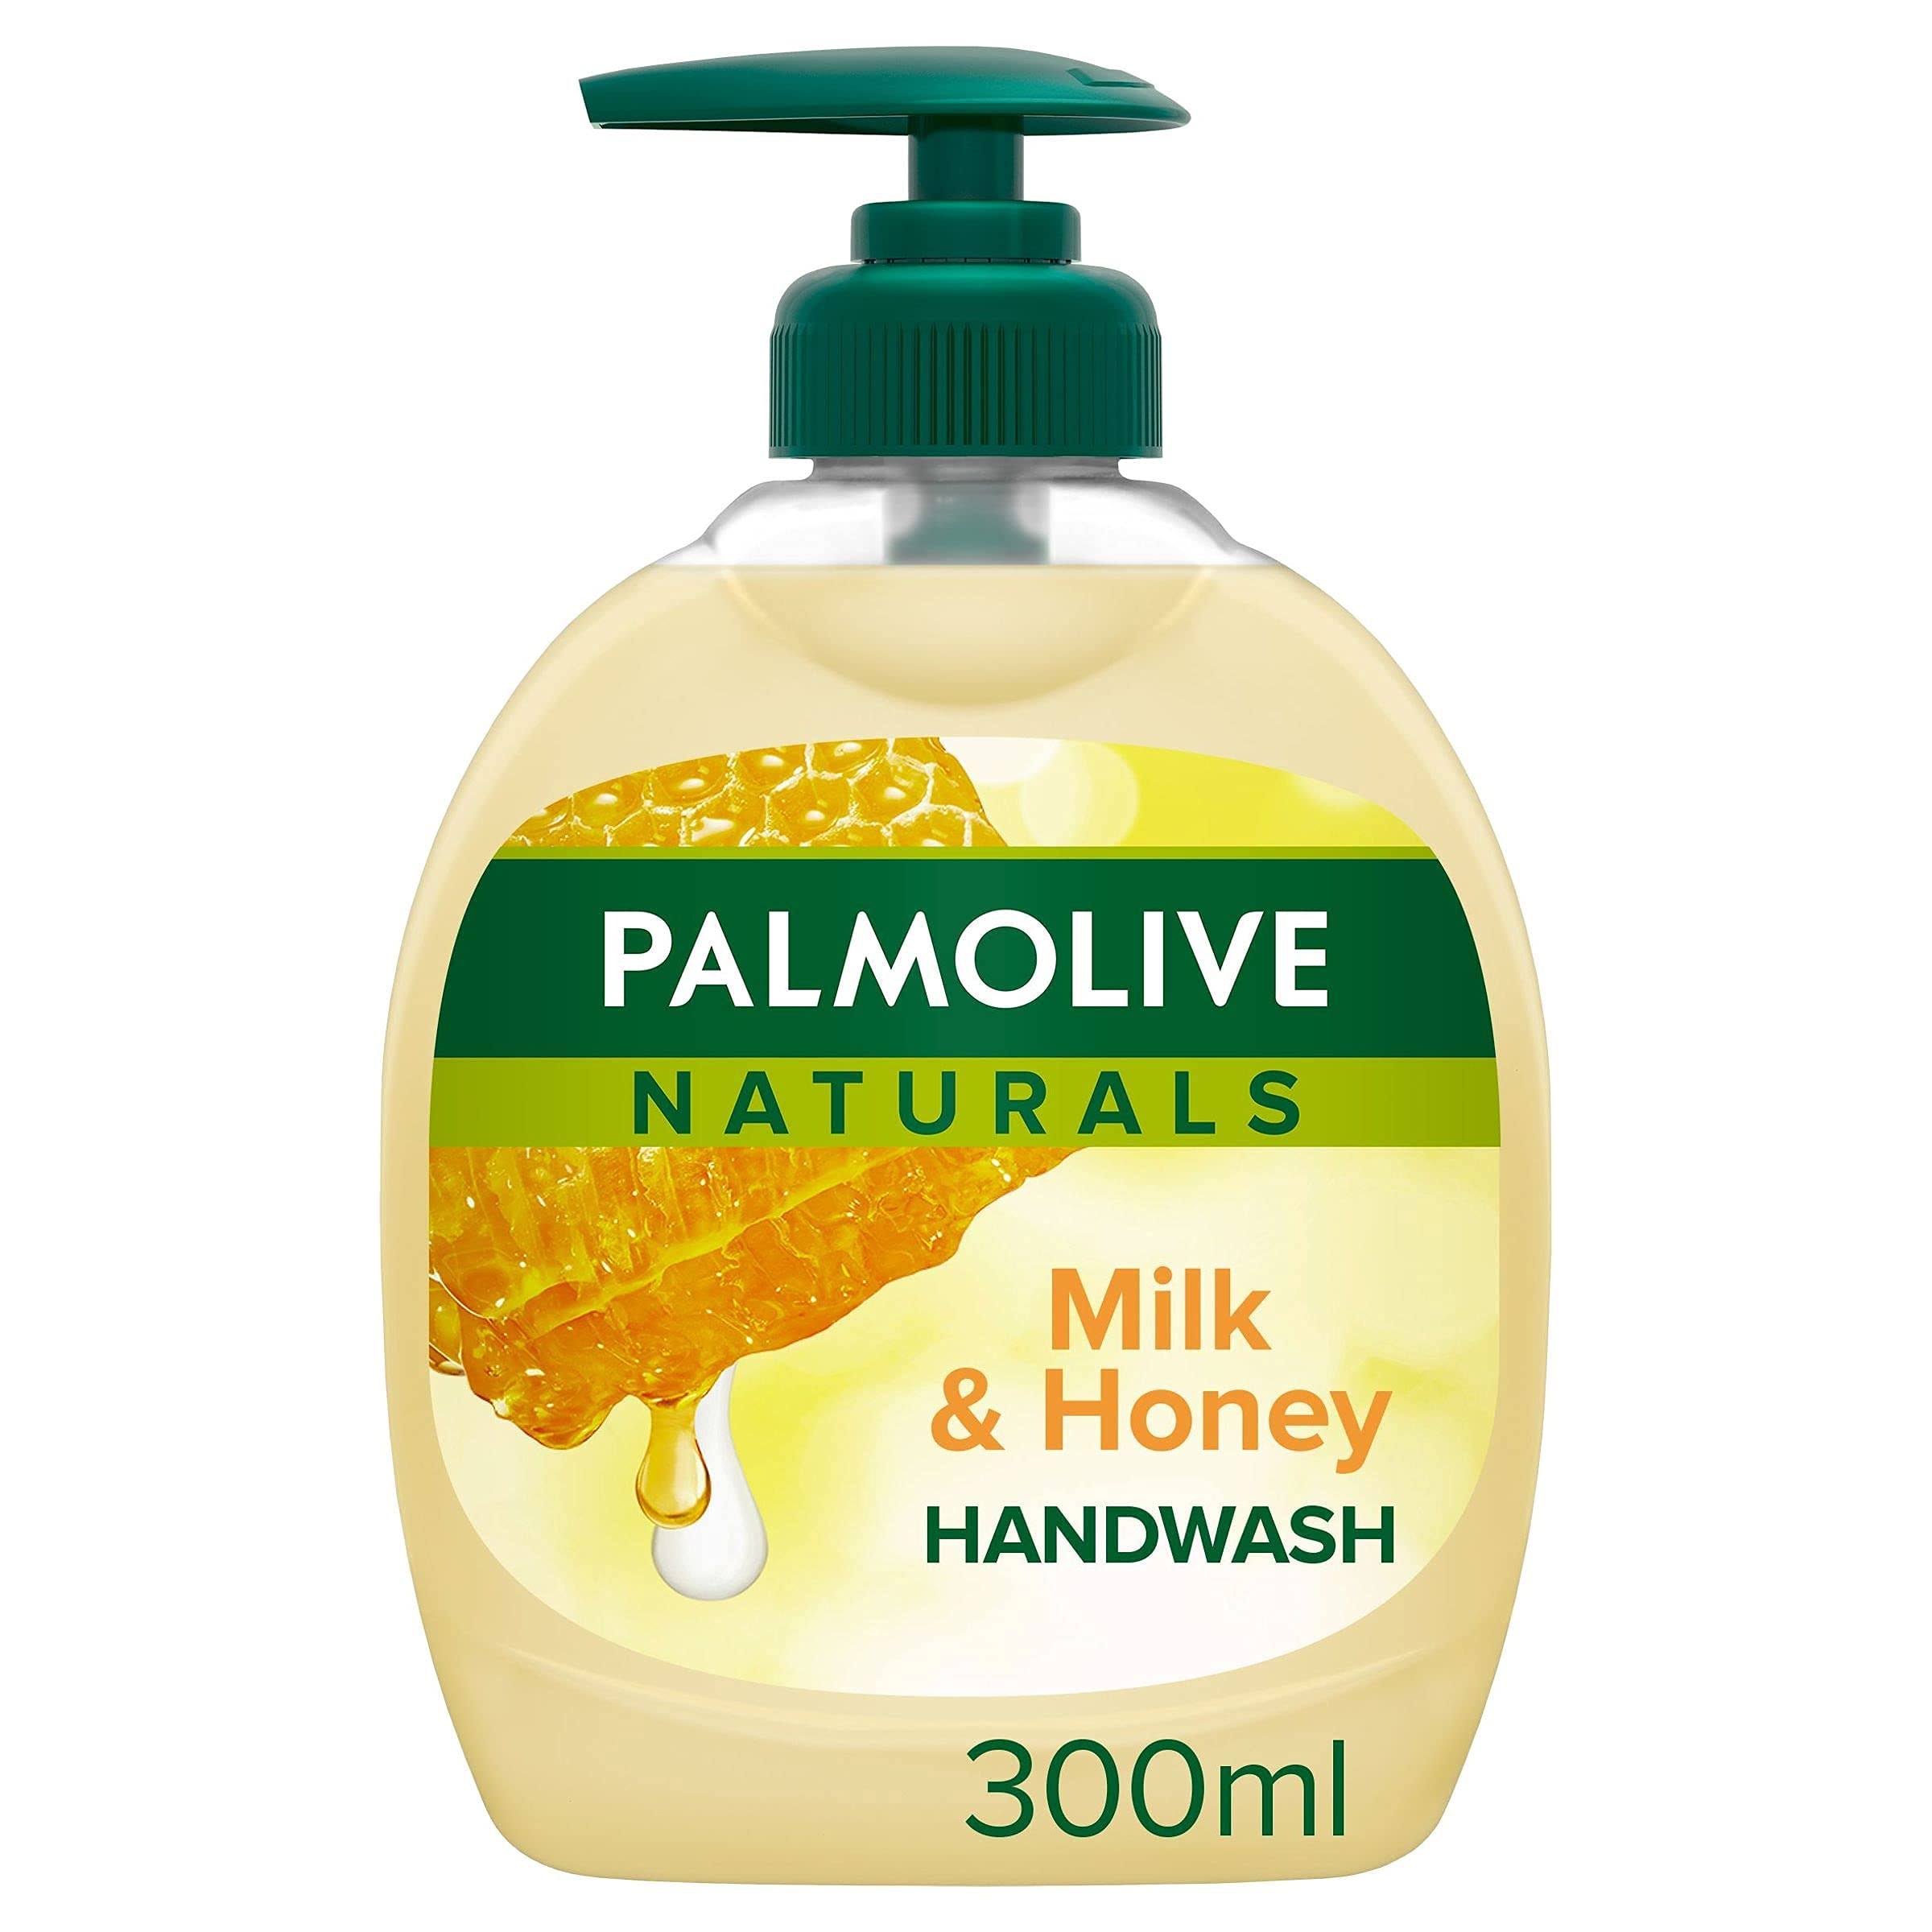 Palmolive Naturals Liquid Handwash - 300ml, Milk & Honey